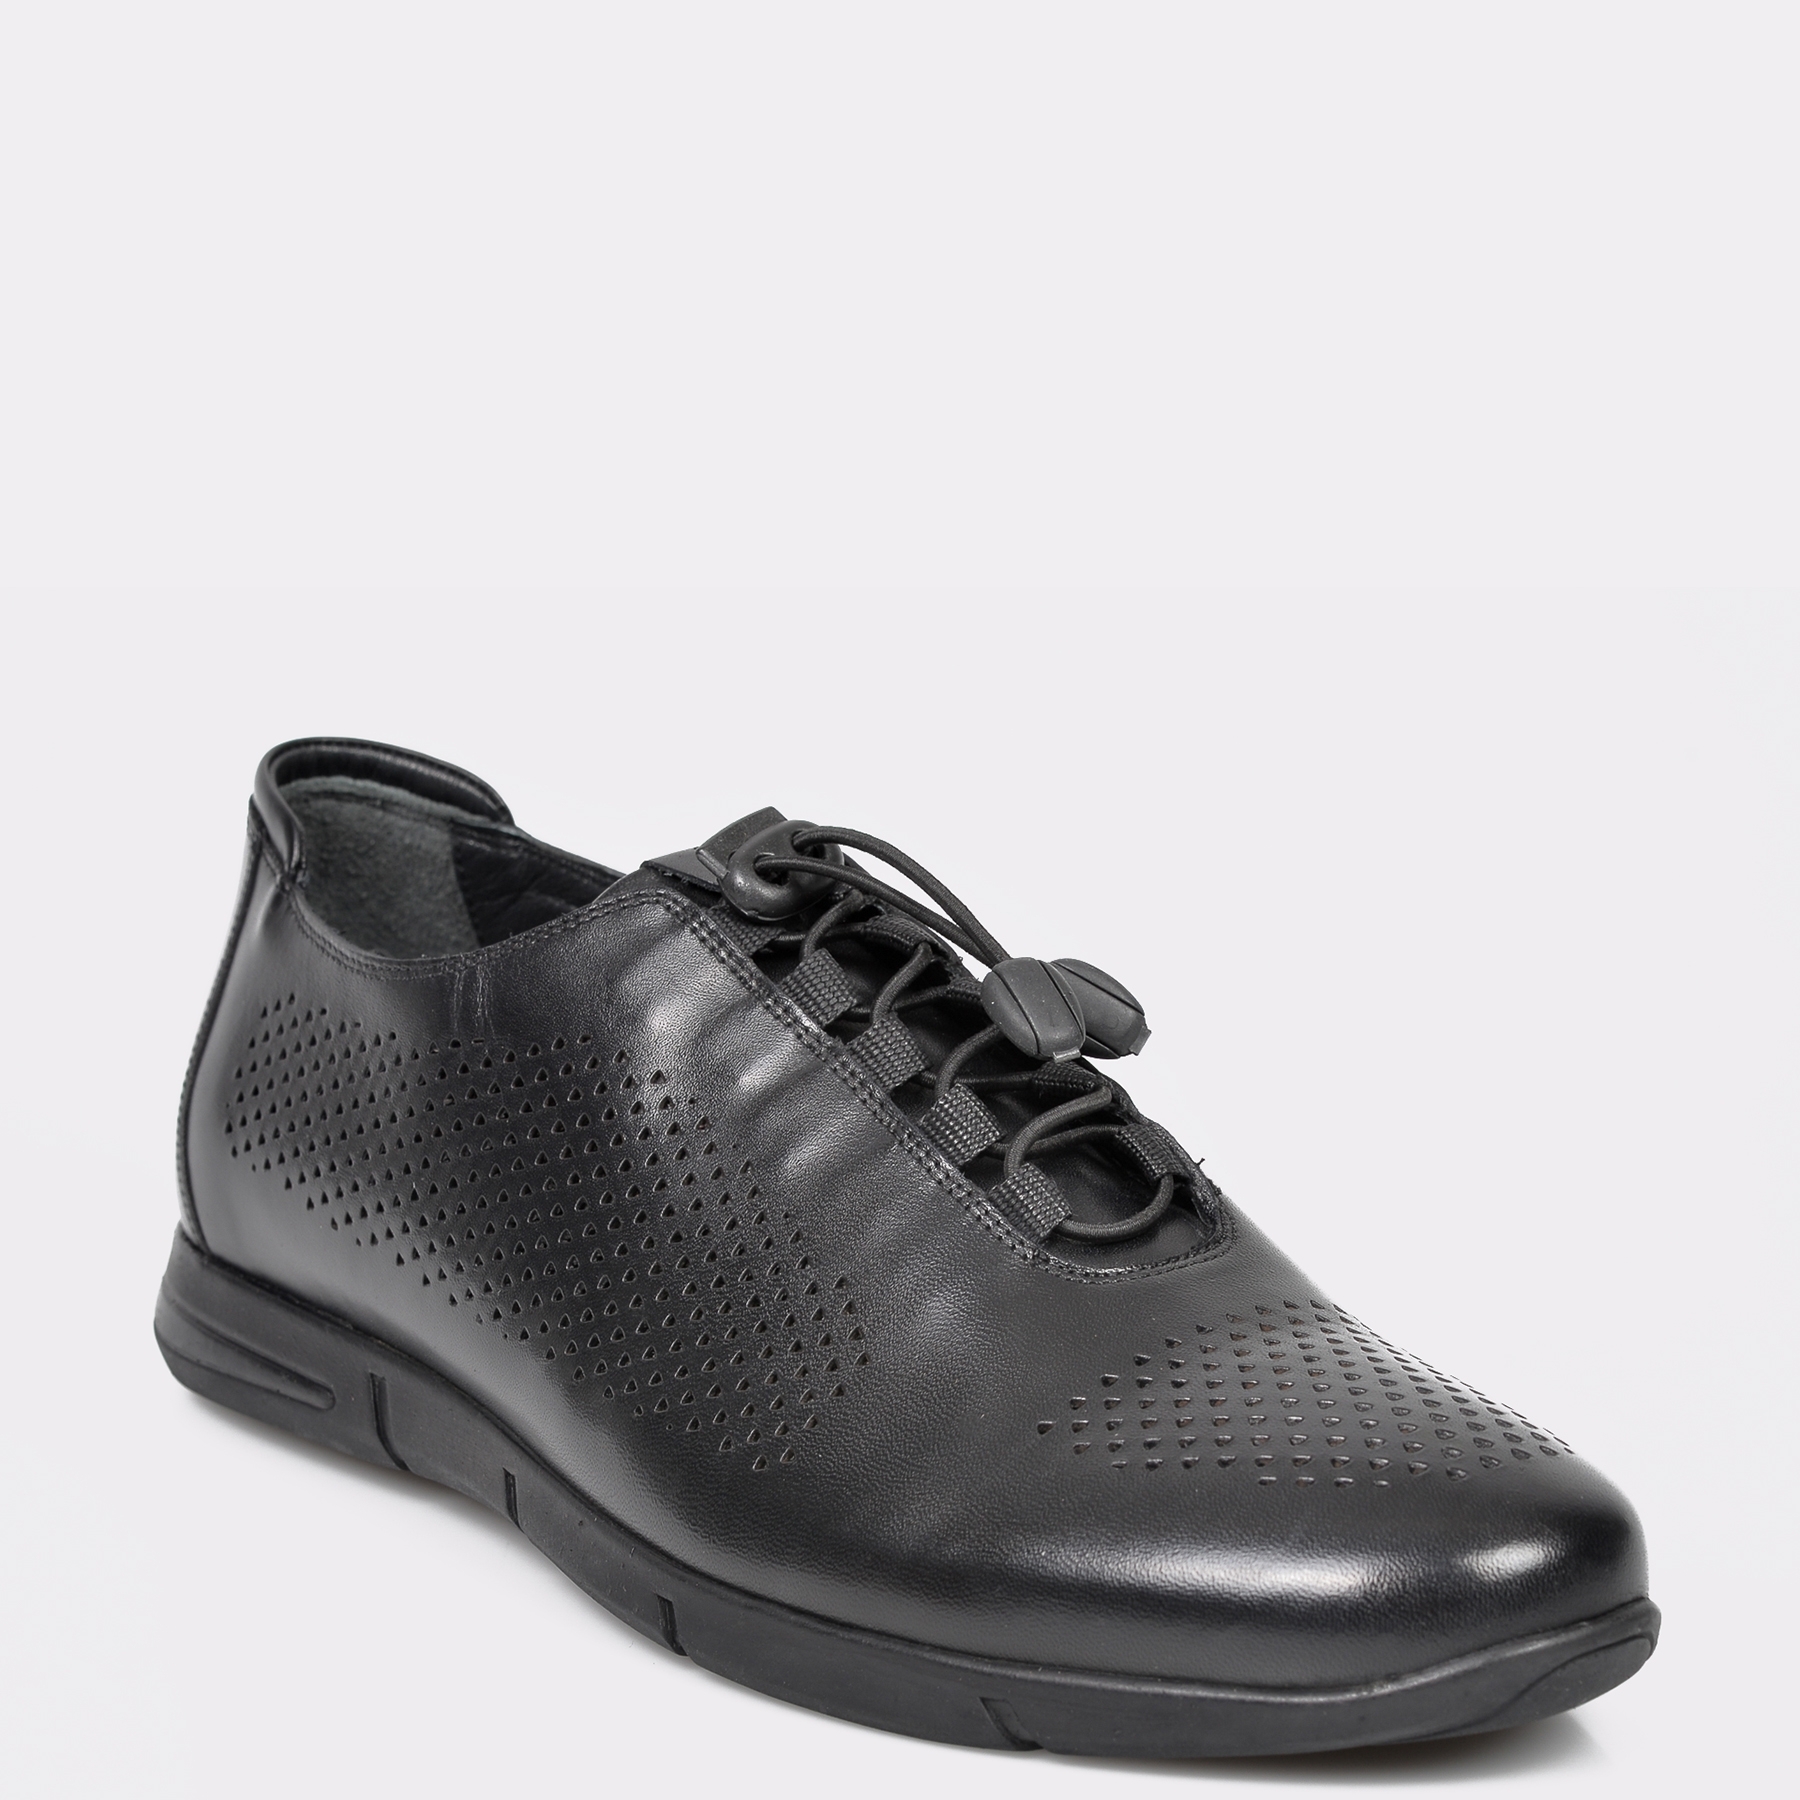 Pantofi OTTER negre, Gheata Barbat, din piele naturala